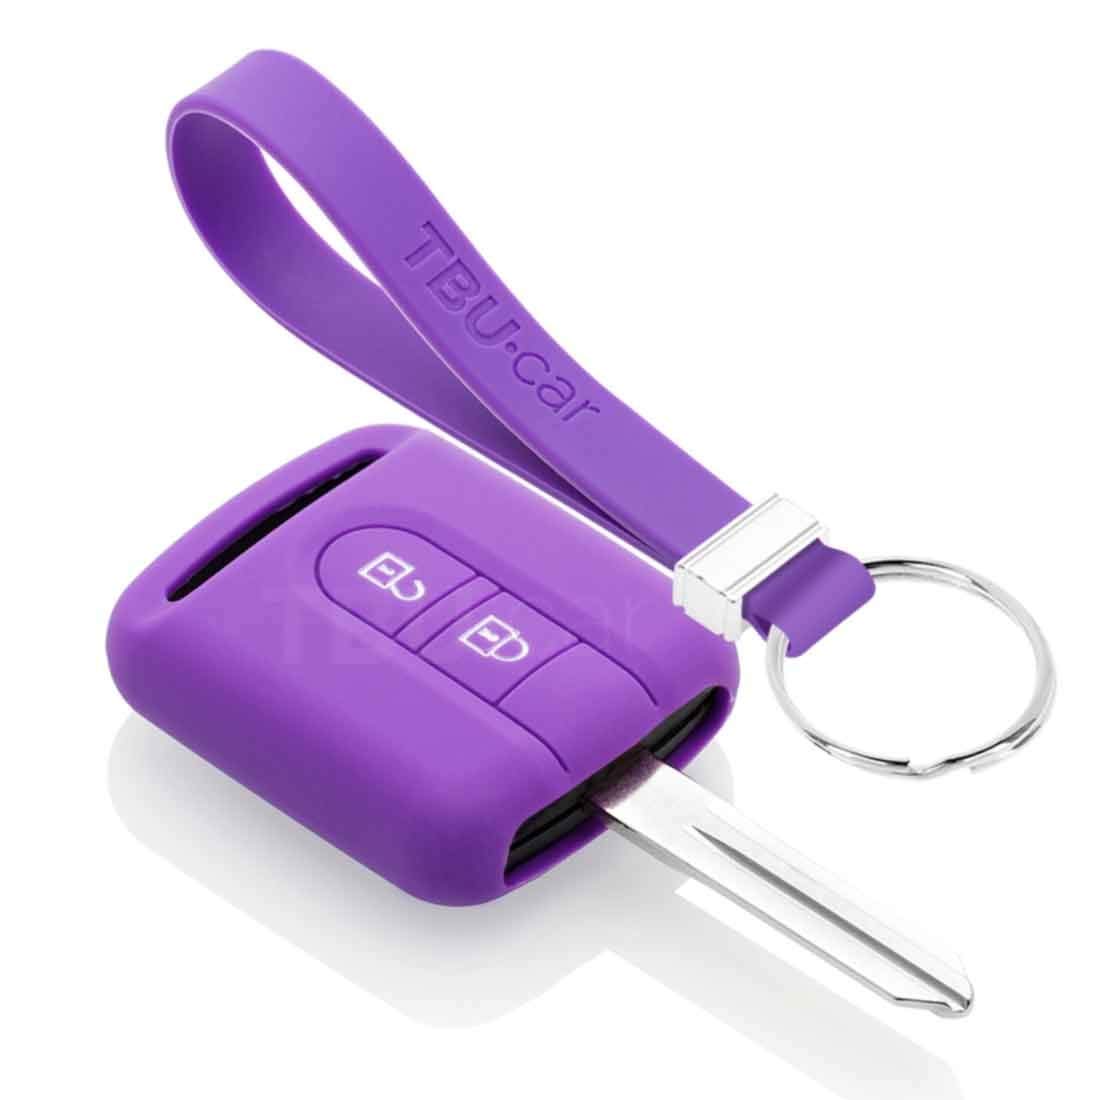 TBU car Autoschlüssel Hülle kompatibel mit Nissan 2 Tasten - Schutzhülle aus Silikon - Auto Schlüsselhülle Cover in Violett von TBU car